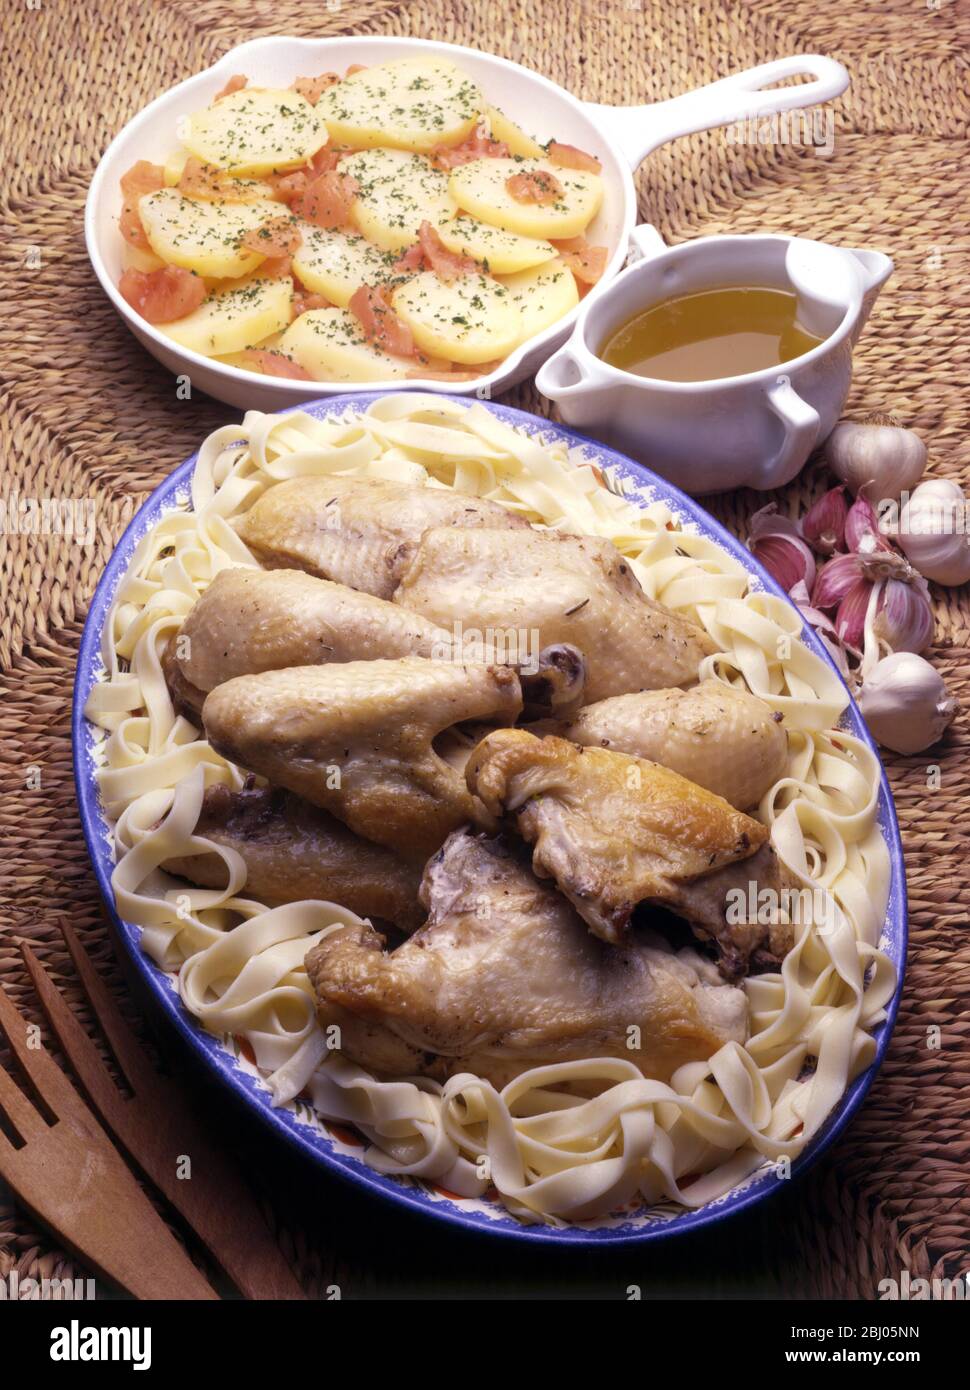 Poulet aux trente gousses d'ail - poulet cuit avec trente gousses d'ail - - Pommes de terre A la provencale - plat méditerranéen de pommes de terre Banque D'Images